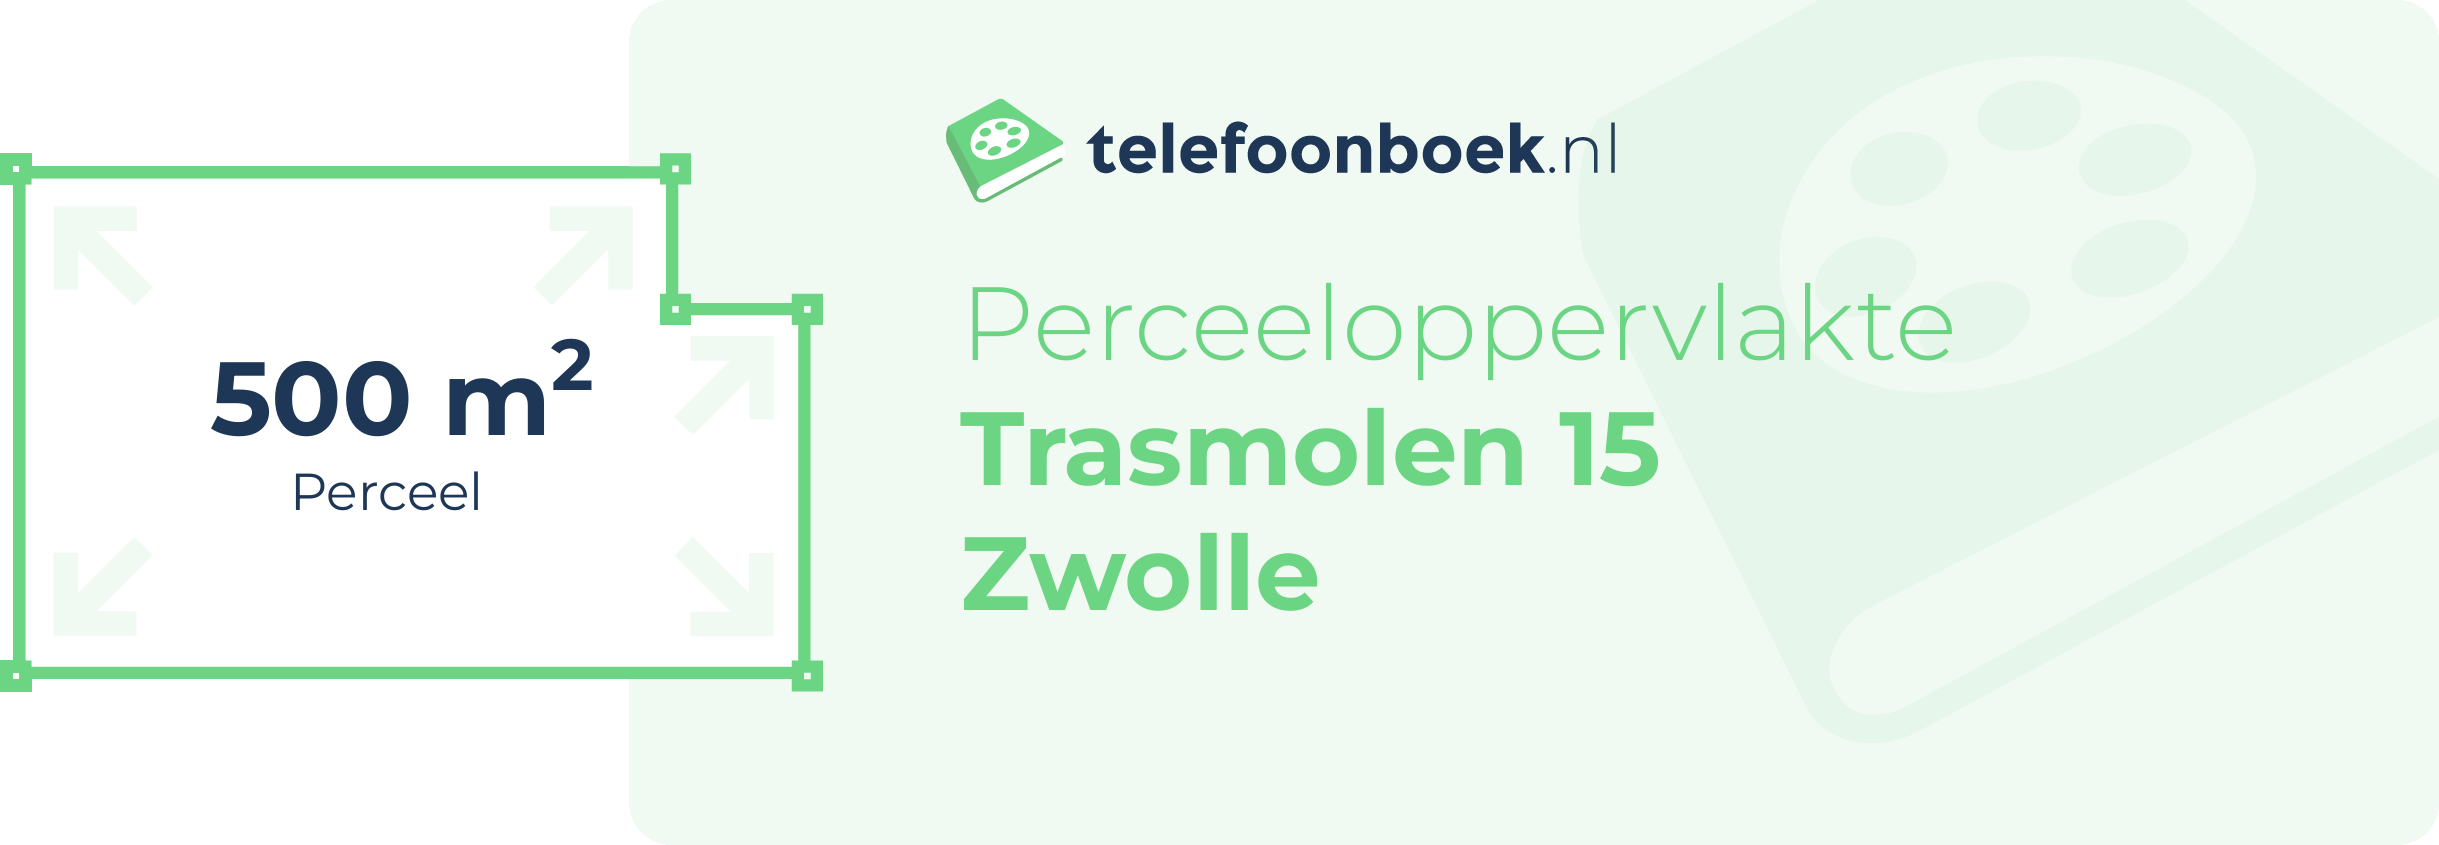 Perceeloppervlakte Trasmolen 15 Zwolle